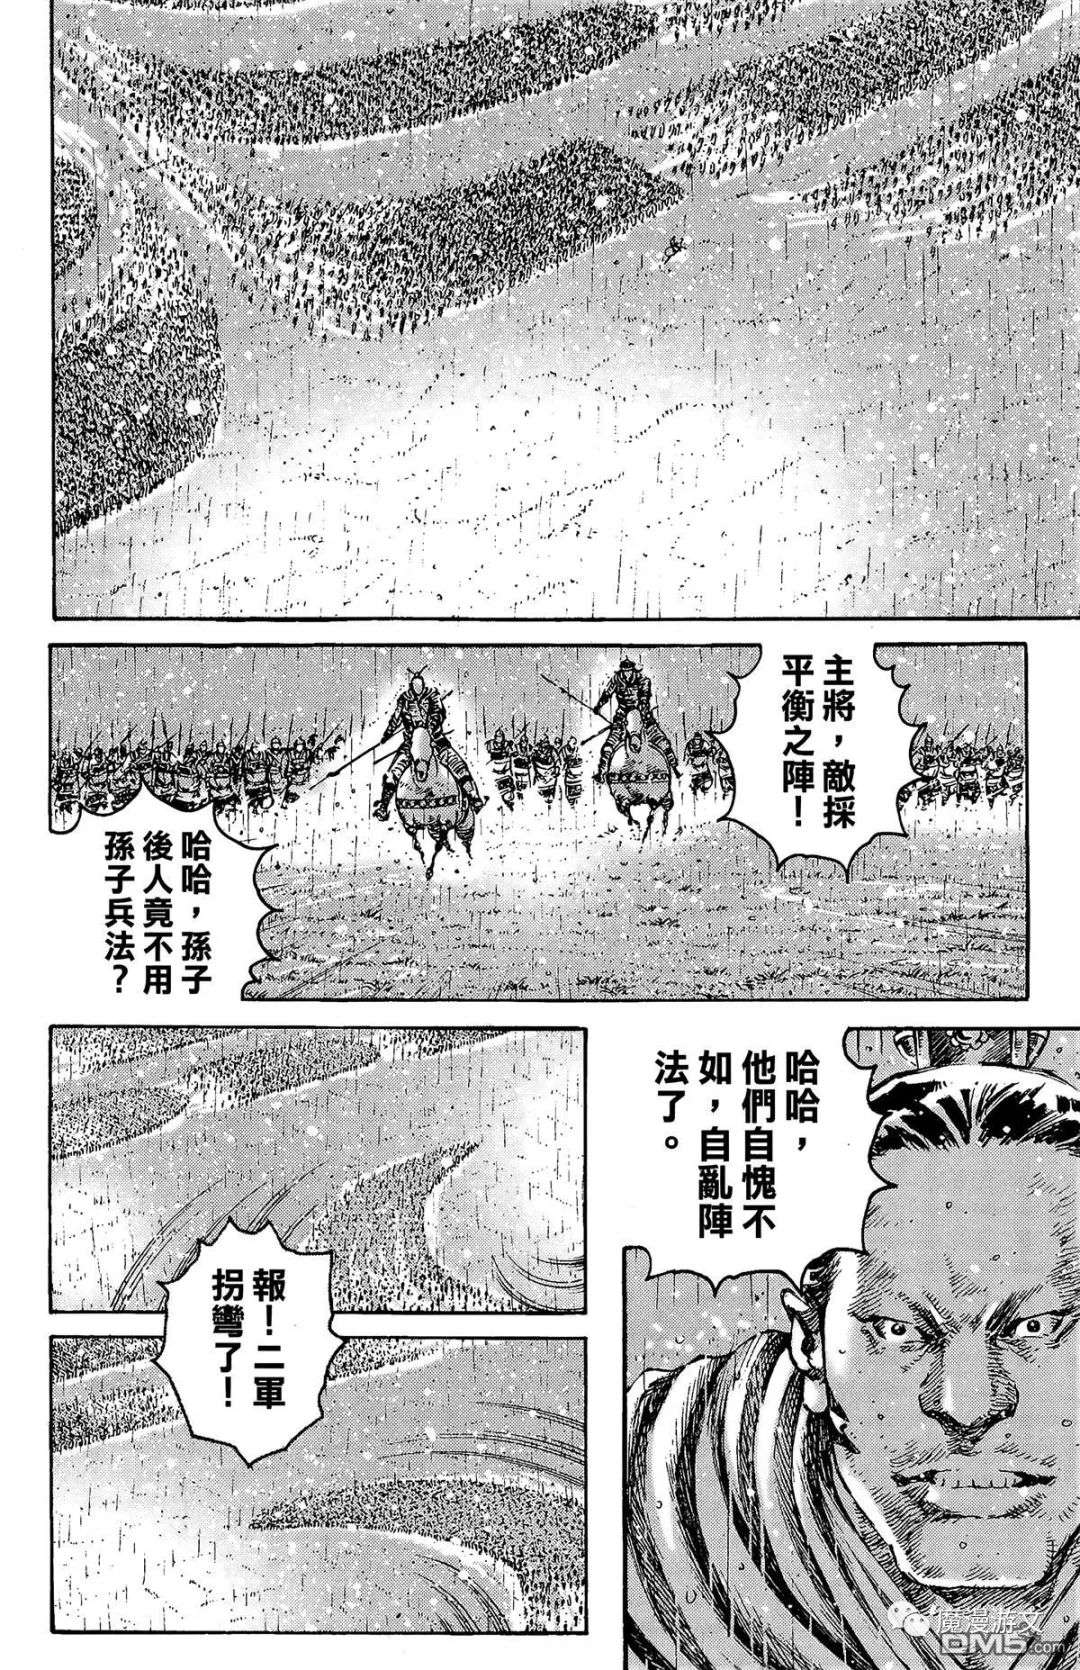 《火鳳燎原》第三十三卷 戲劇 第107張